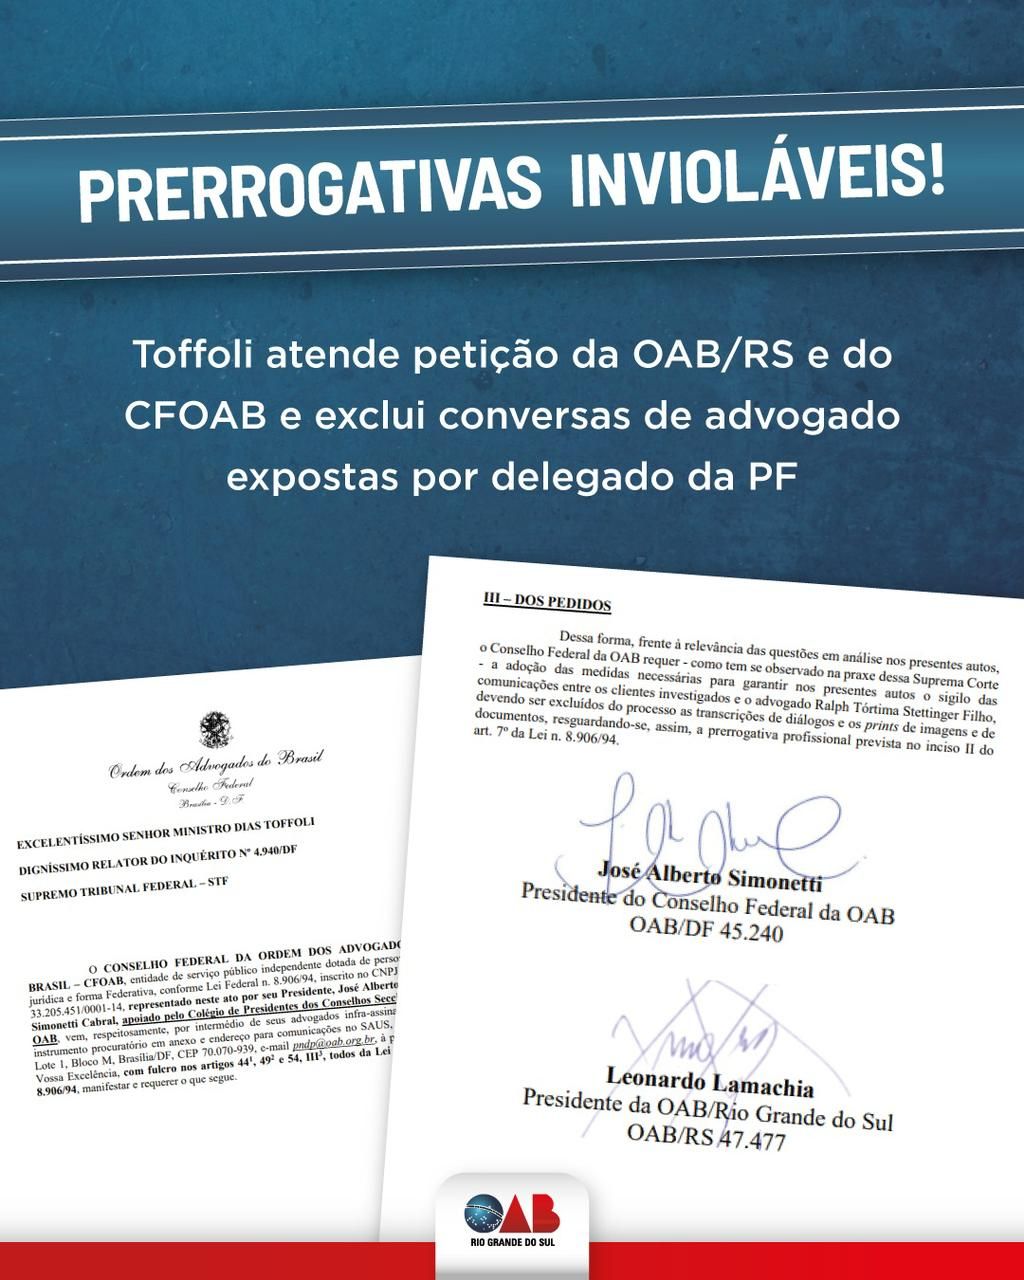 OAB/RS - Prerrogativas: ministro Toffoli atende petição da OAB/RS